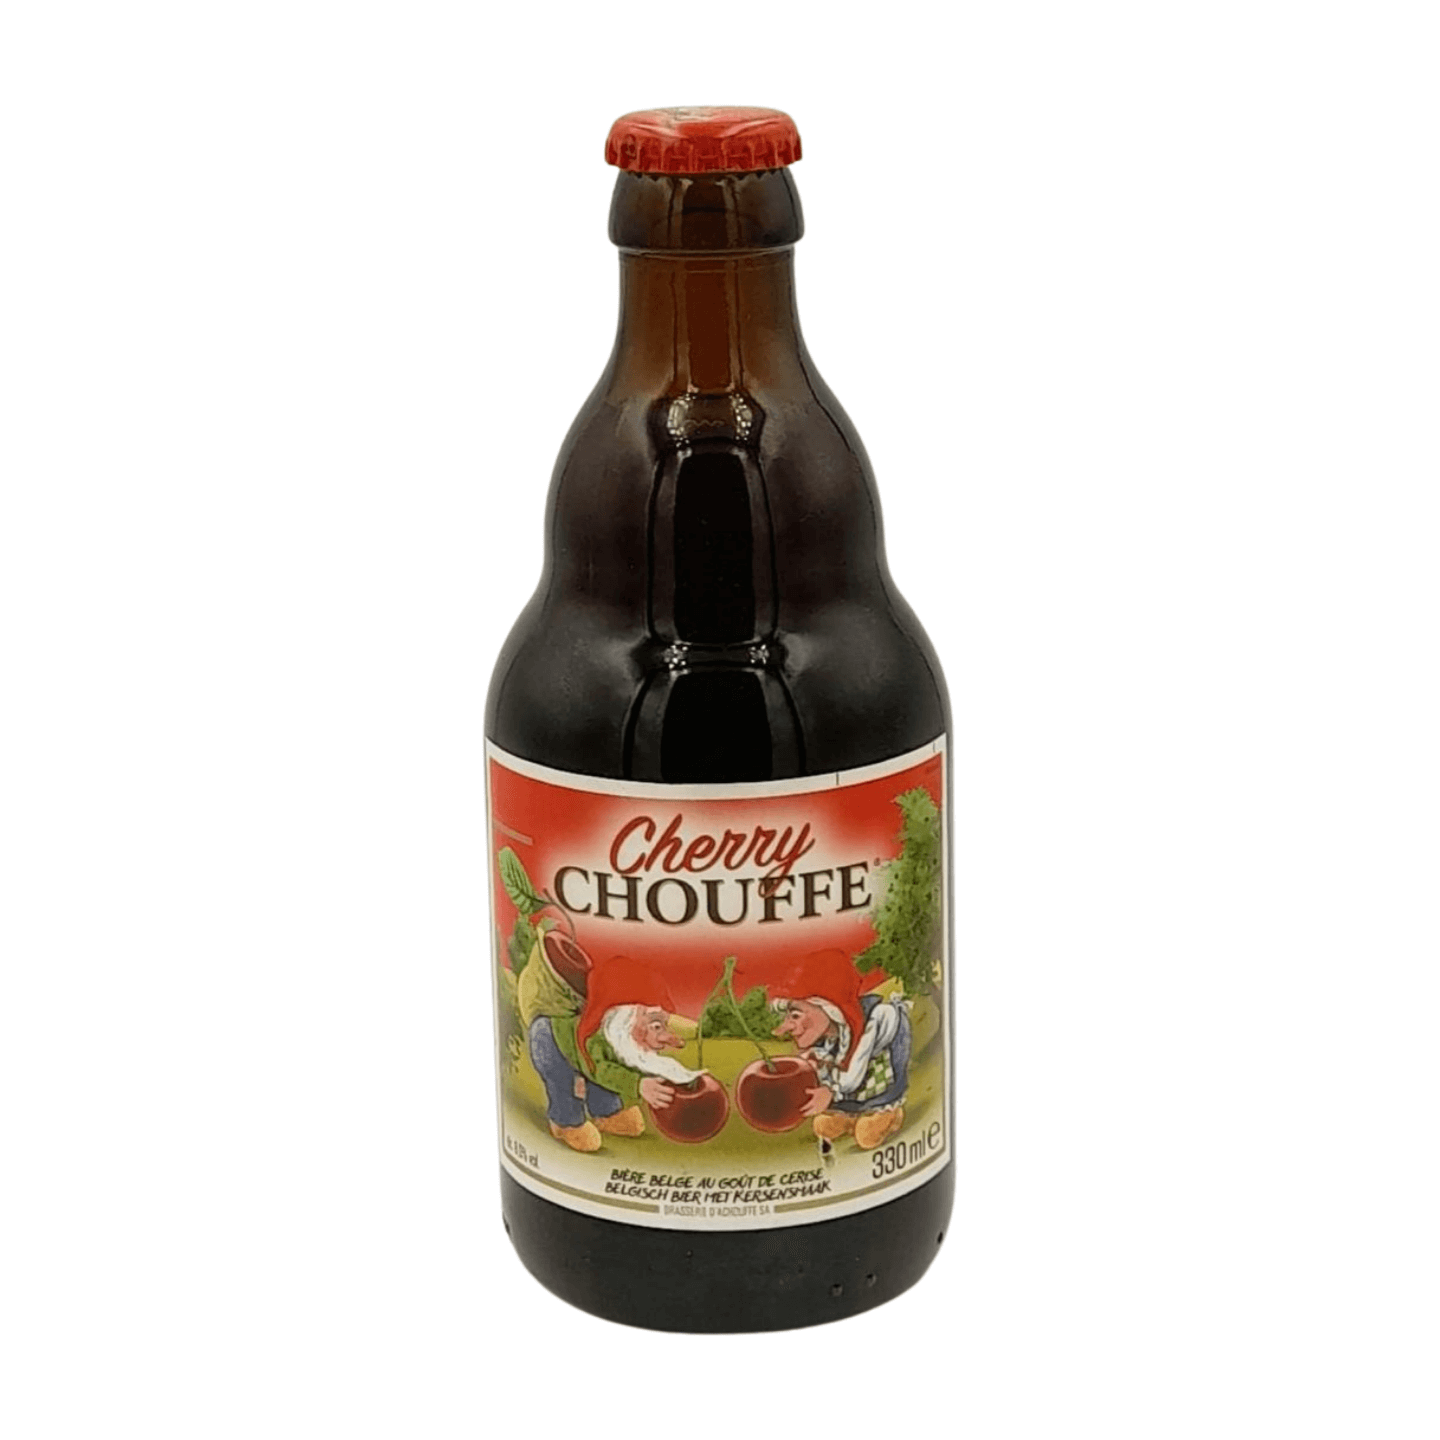 Brasserie d'Achouffe Cherry Chouffe | Kriek Webshop Online Verdins Bierwinkel Rotterdam